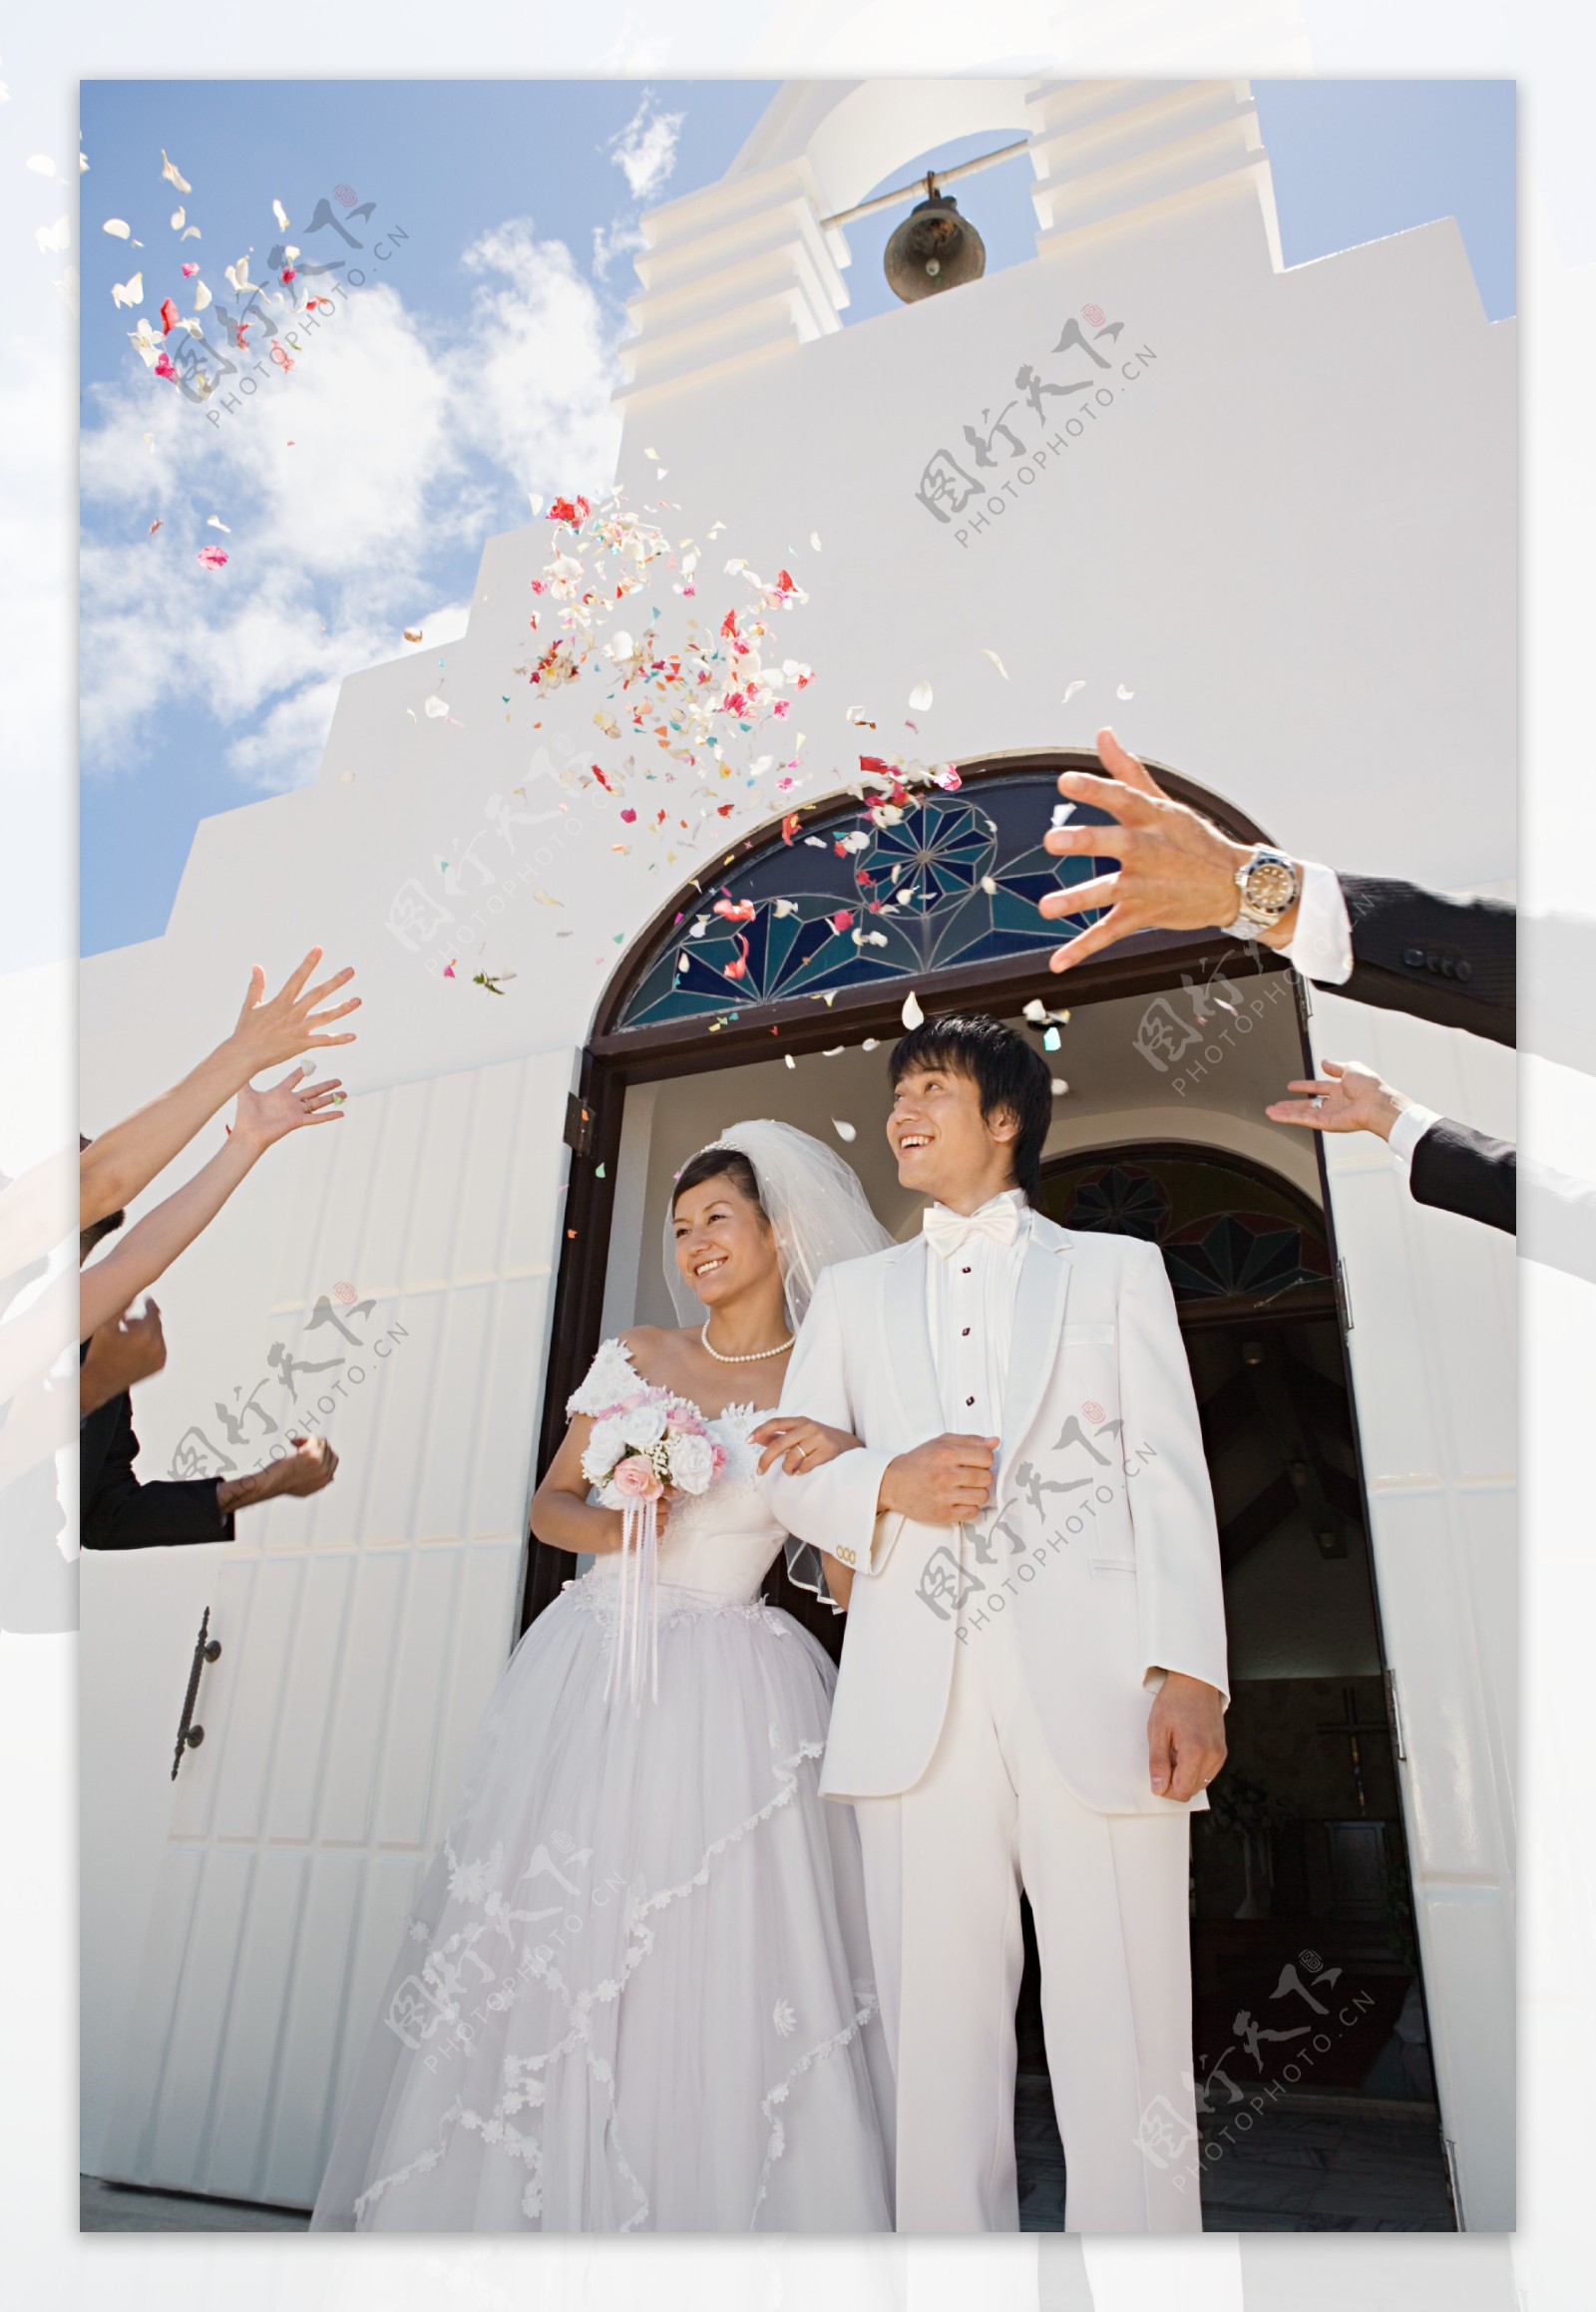 礼堂前看着飘落花瓣幸福微笑的新郎新娘图片图片